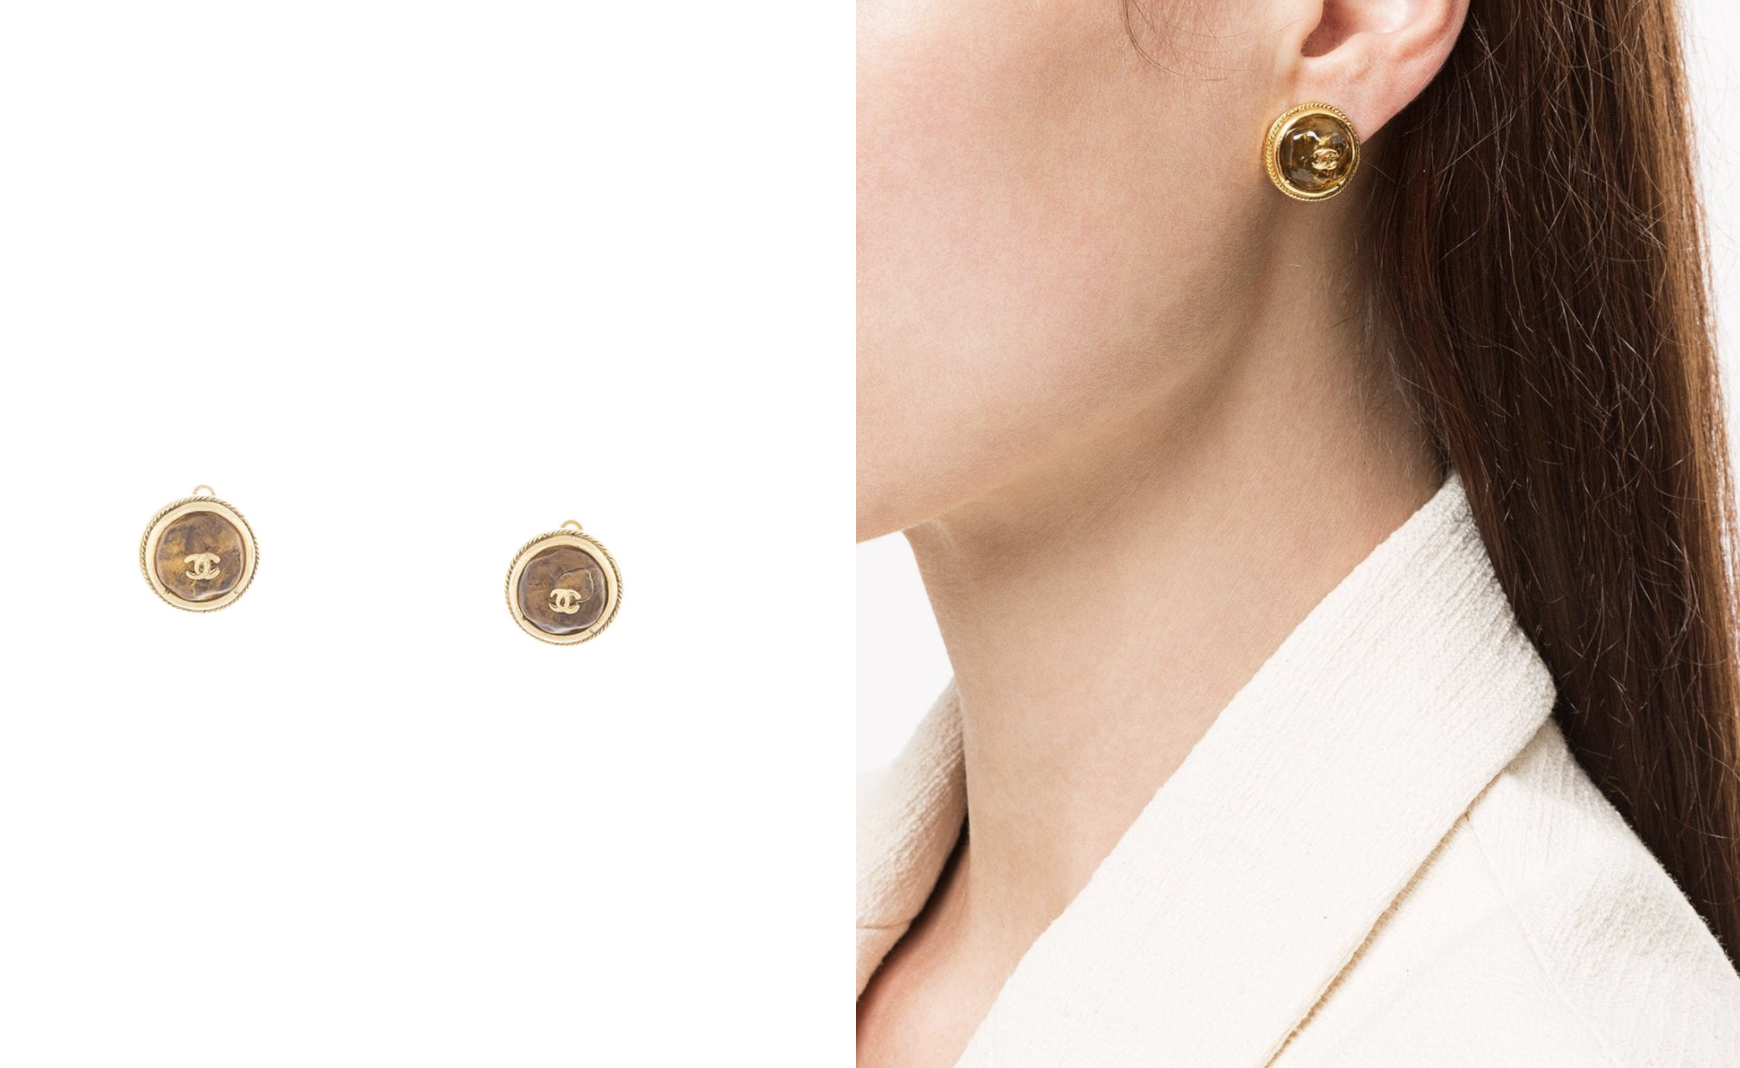 這對金色的Chanel耳環配有一條精細的車線，使耳環更具設計感和精緻度。正面是一顆半透明的啡寶石，比一般經常使用的珍珠款更特別。而且它也用上迷你的CC logo，令整對耳環的設計更華麗，愛好金色和大地色系的女生必需入手！